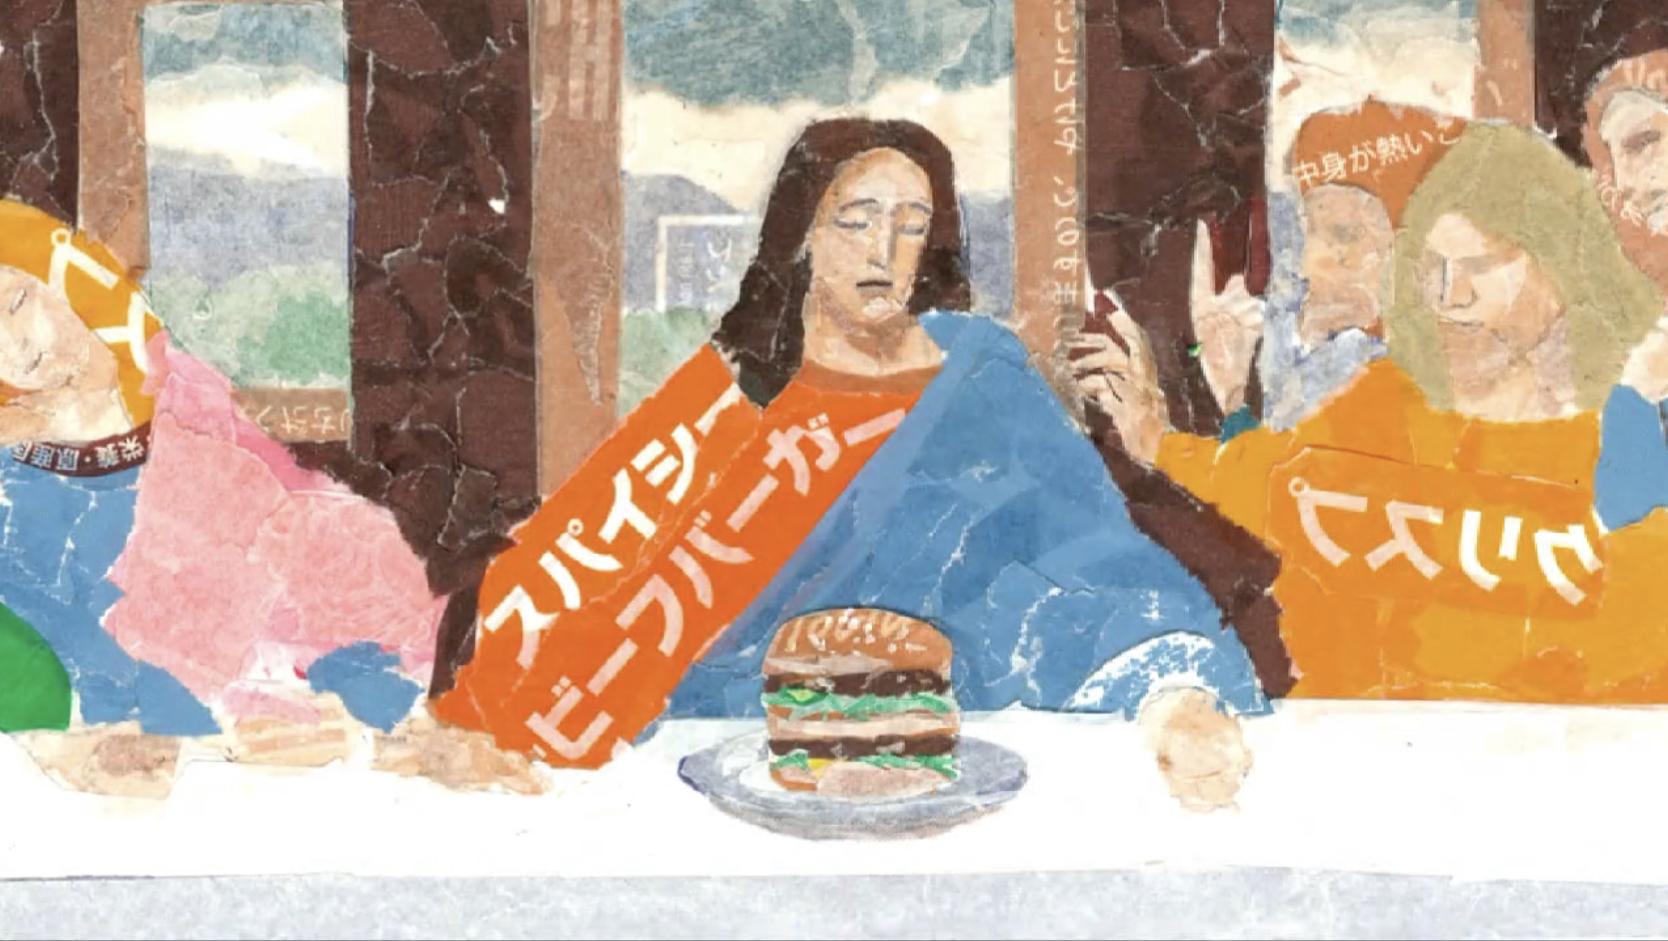 耶穌桌前的漢堡，讓作品增添了不少趣味性。